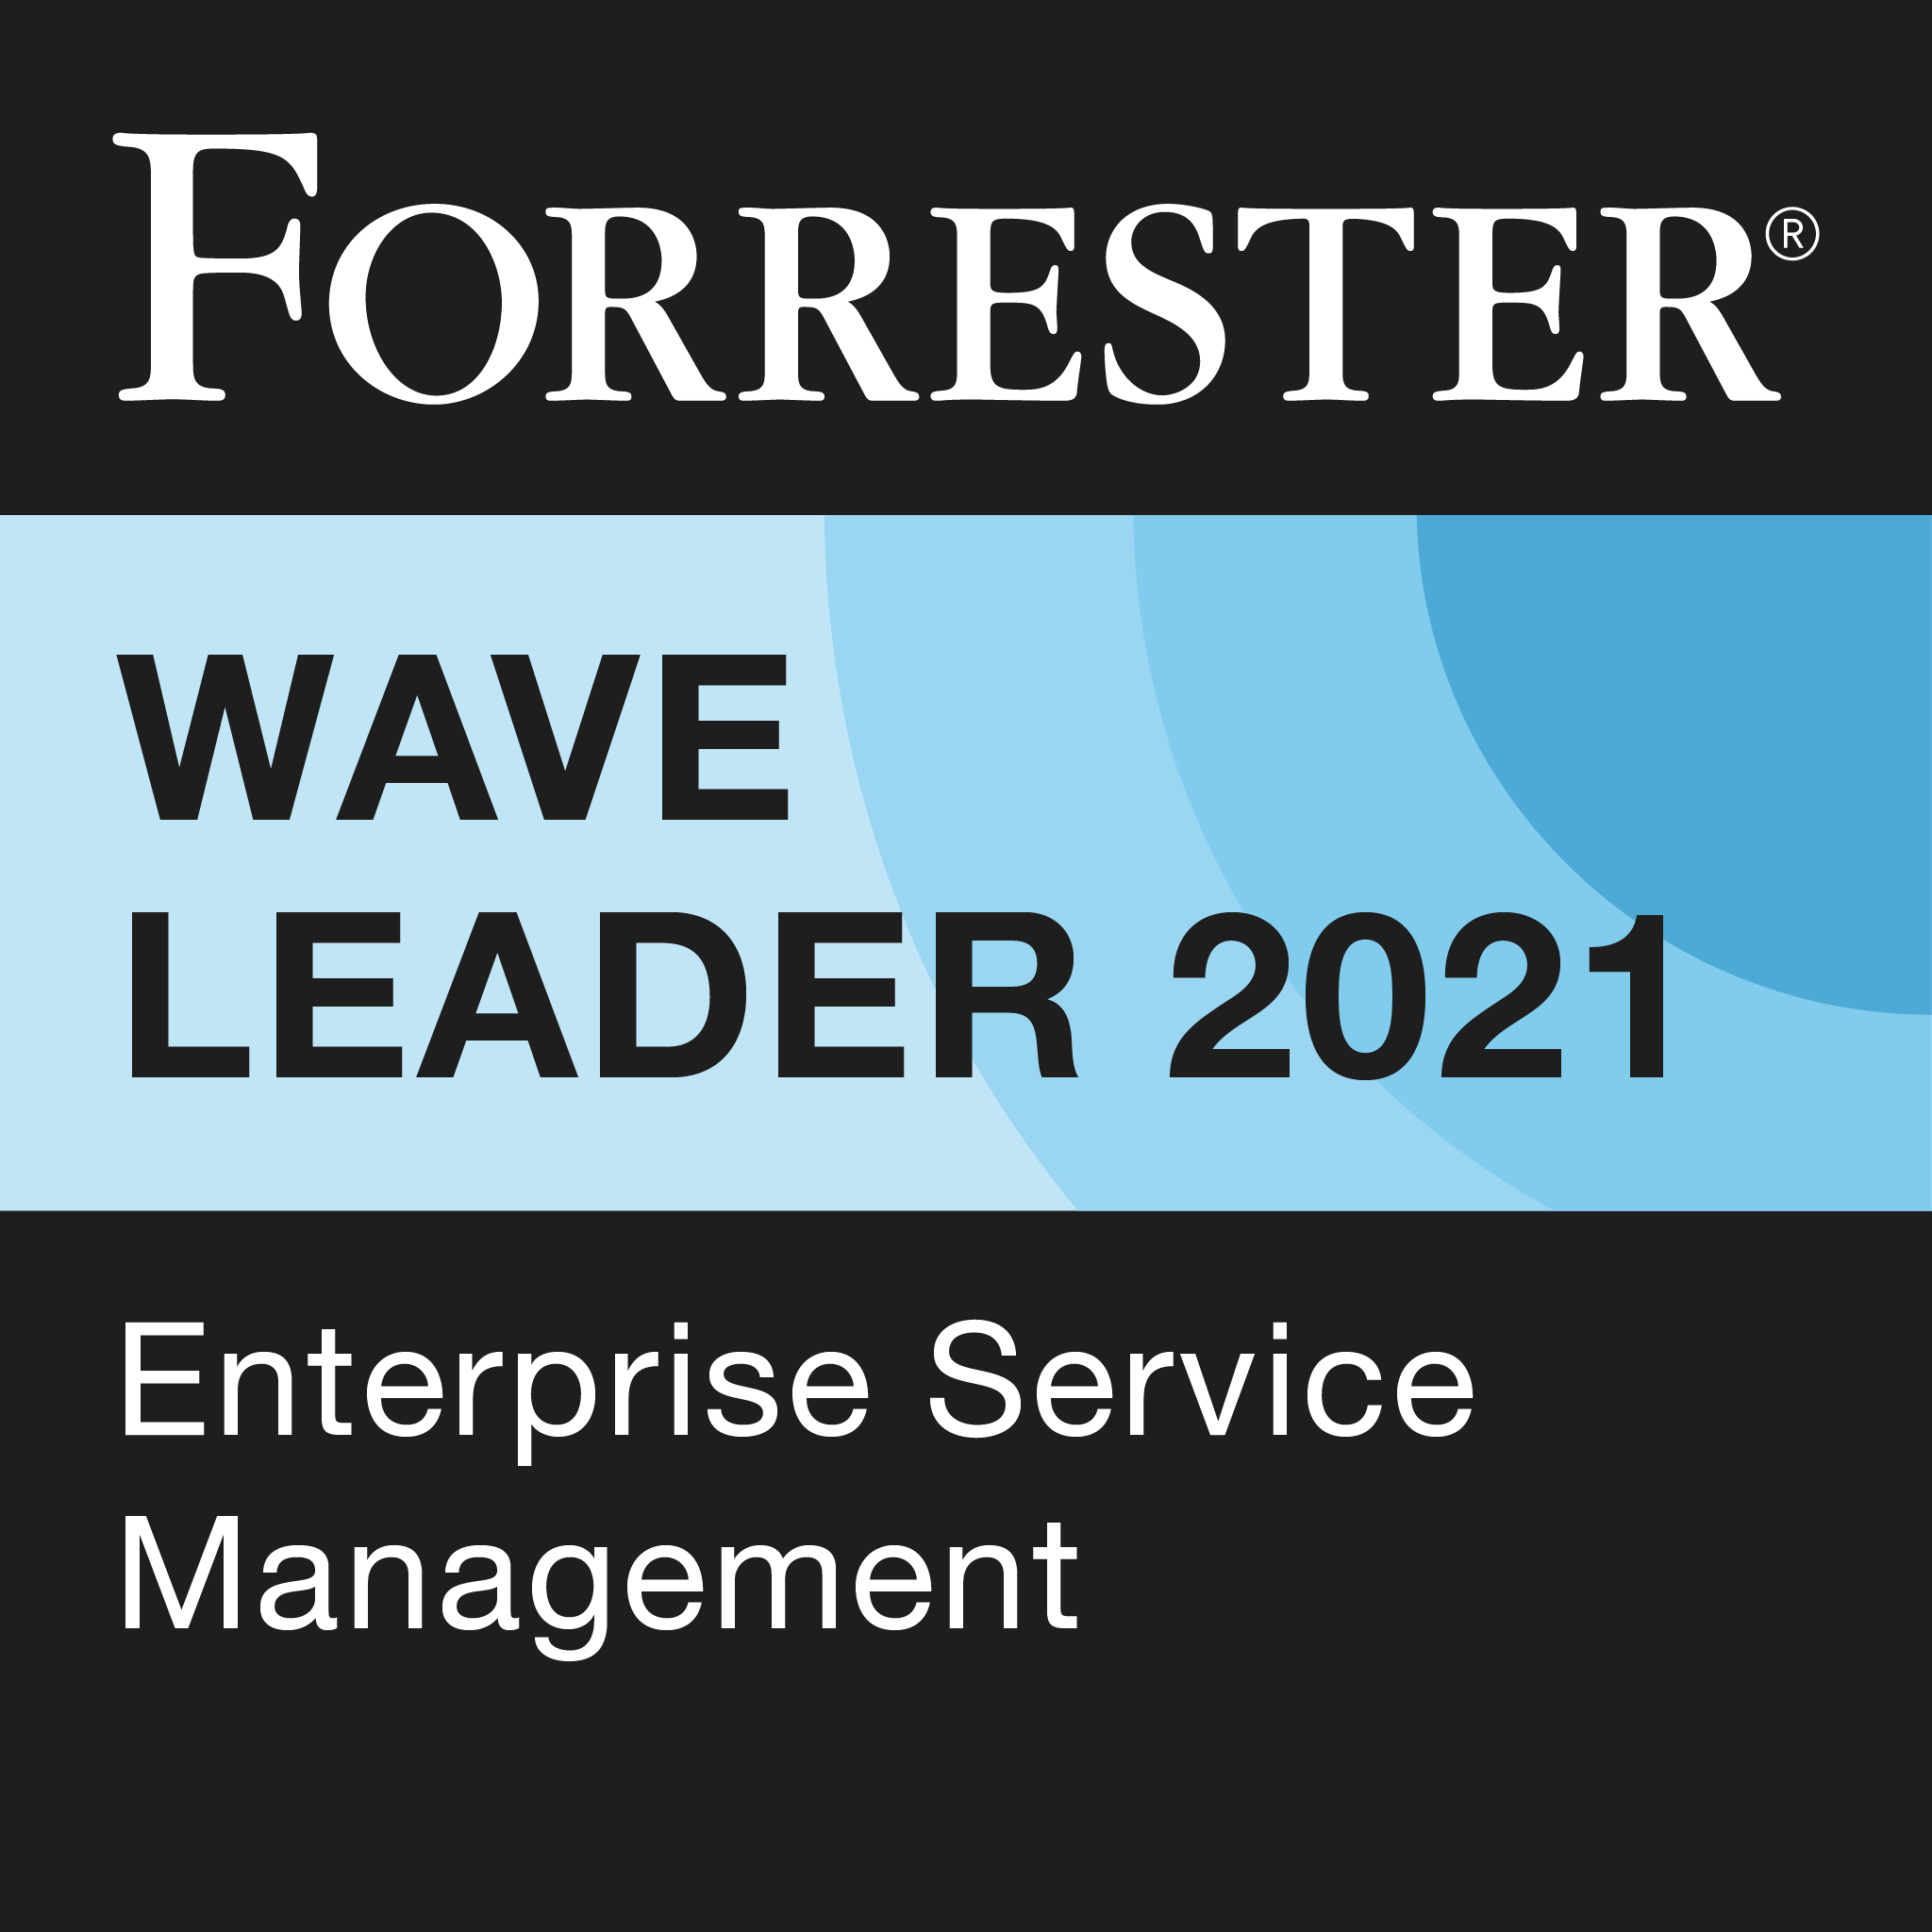 Forrester Wave Leader 2021 Enterprise Service Management